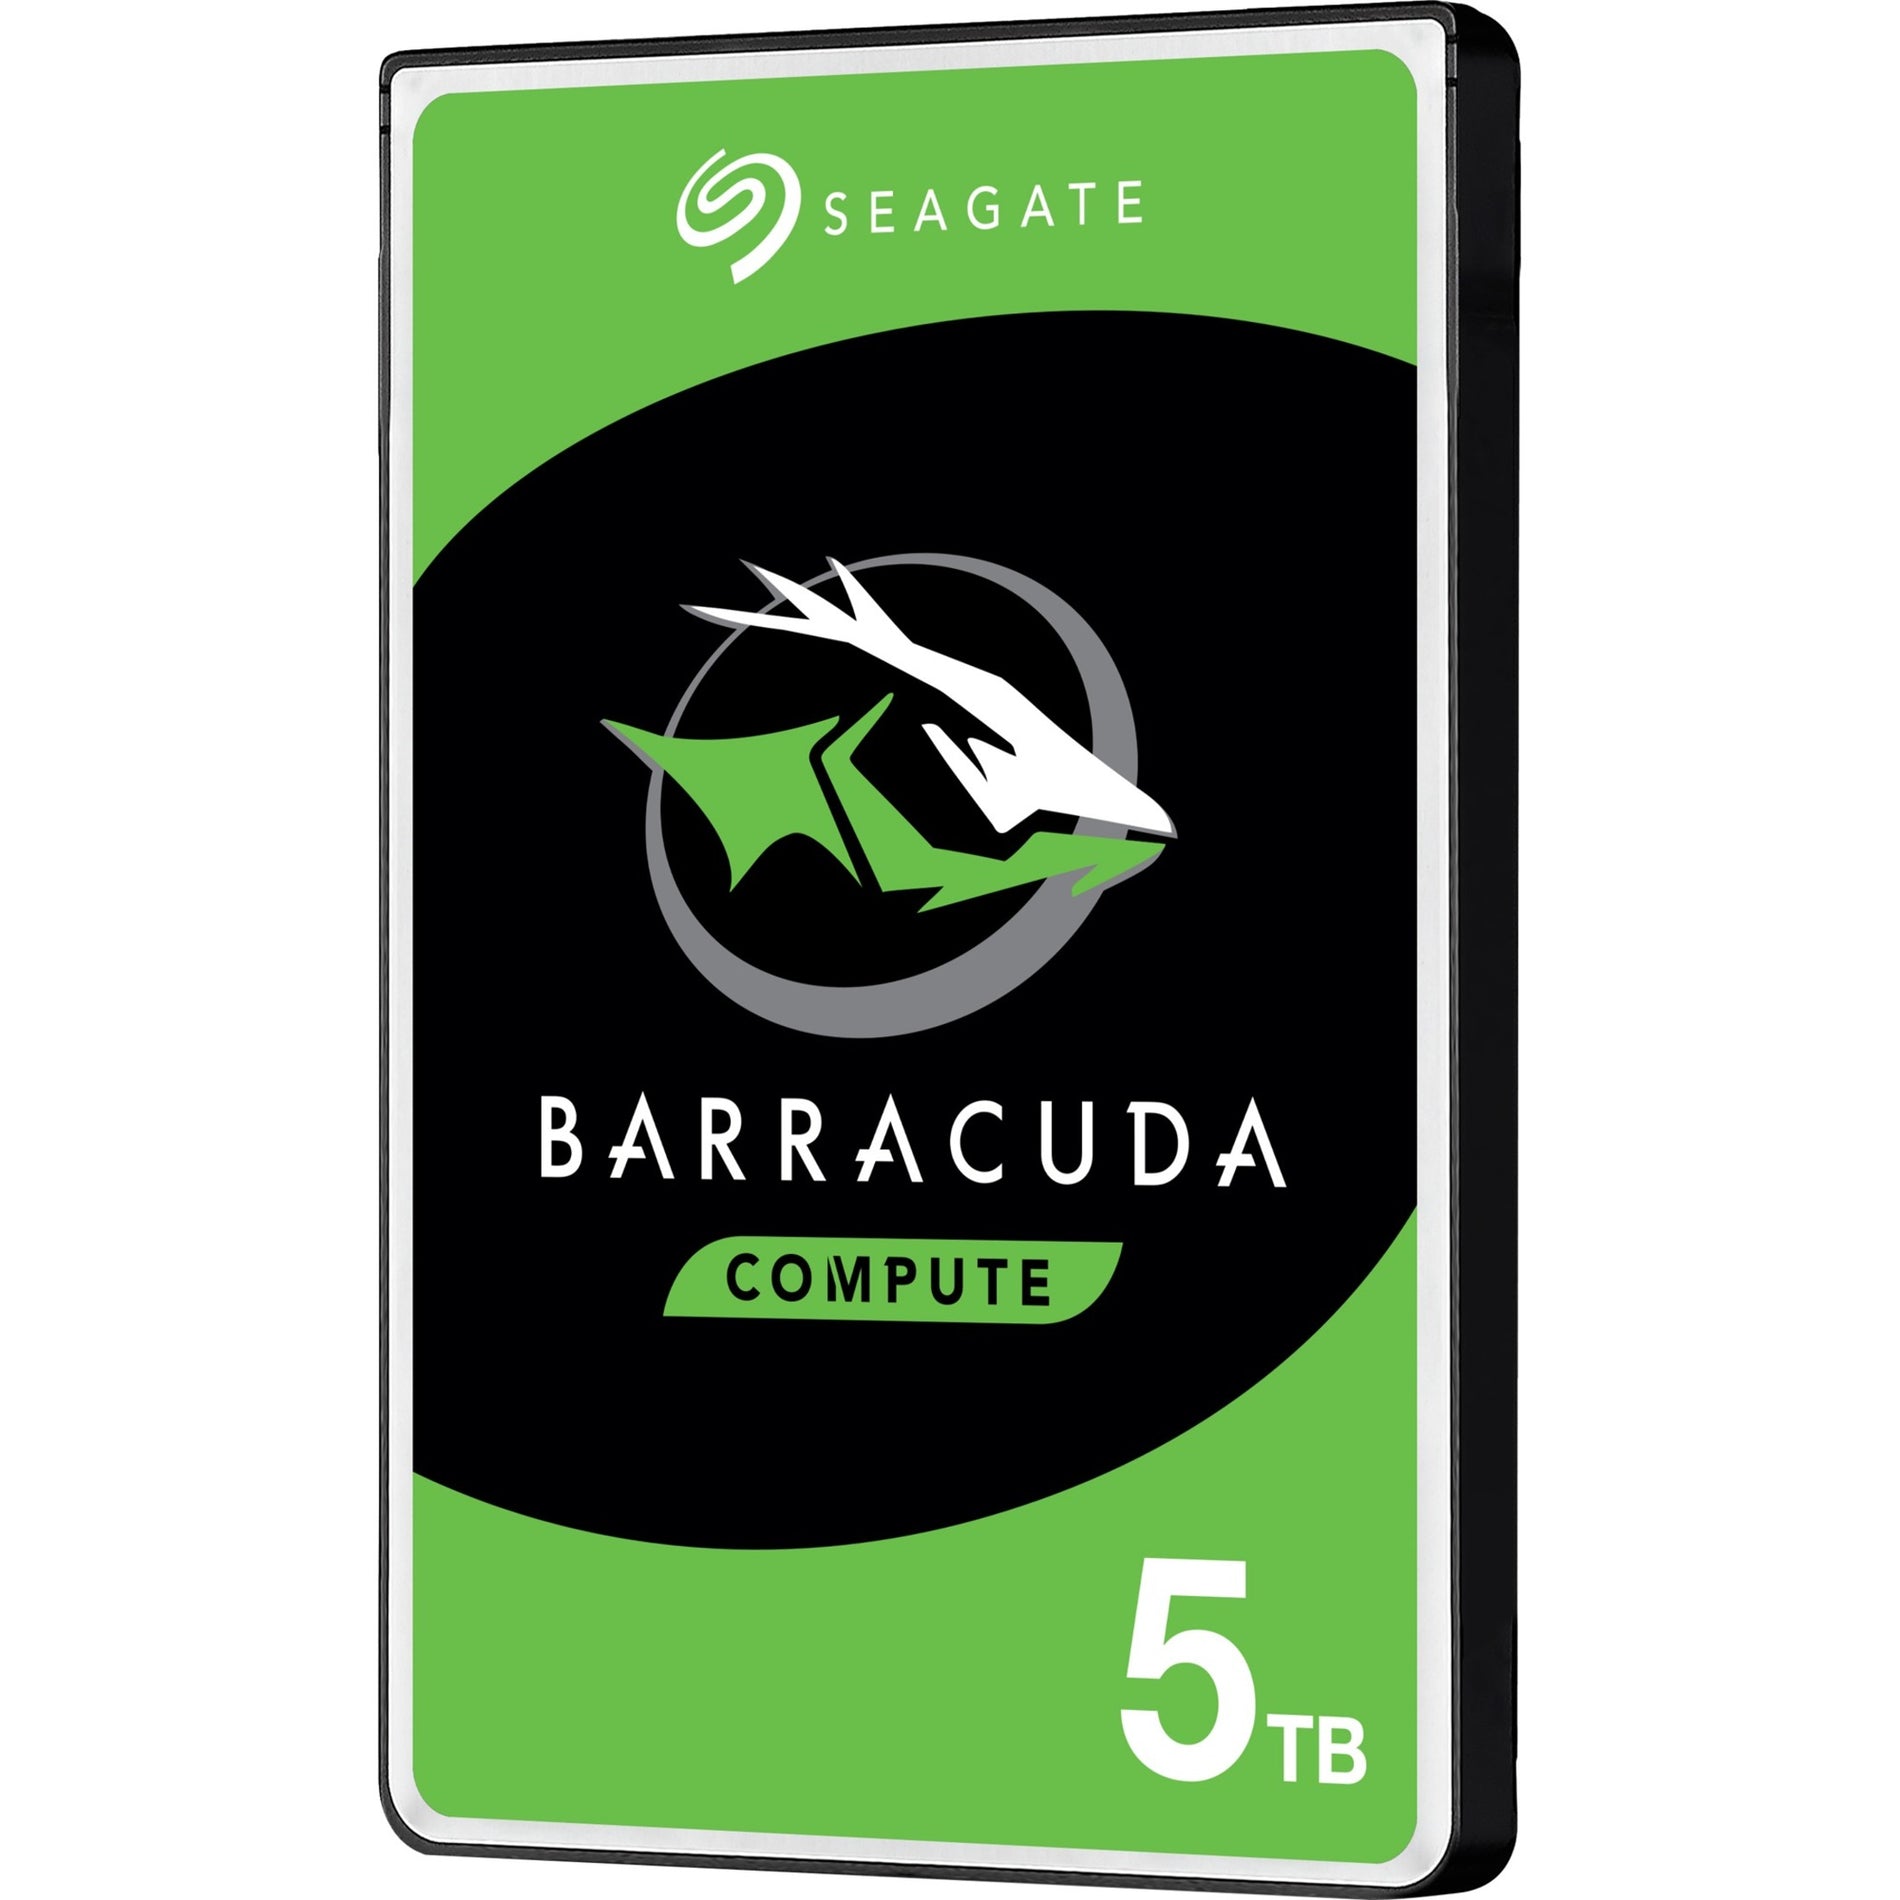 Seagate ST5000LM000 BarraCuda 5 TB Hard Drive, SATA 2.5", 5400RPM, 128MB Buffer